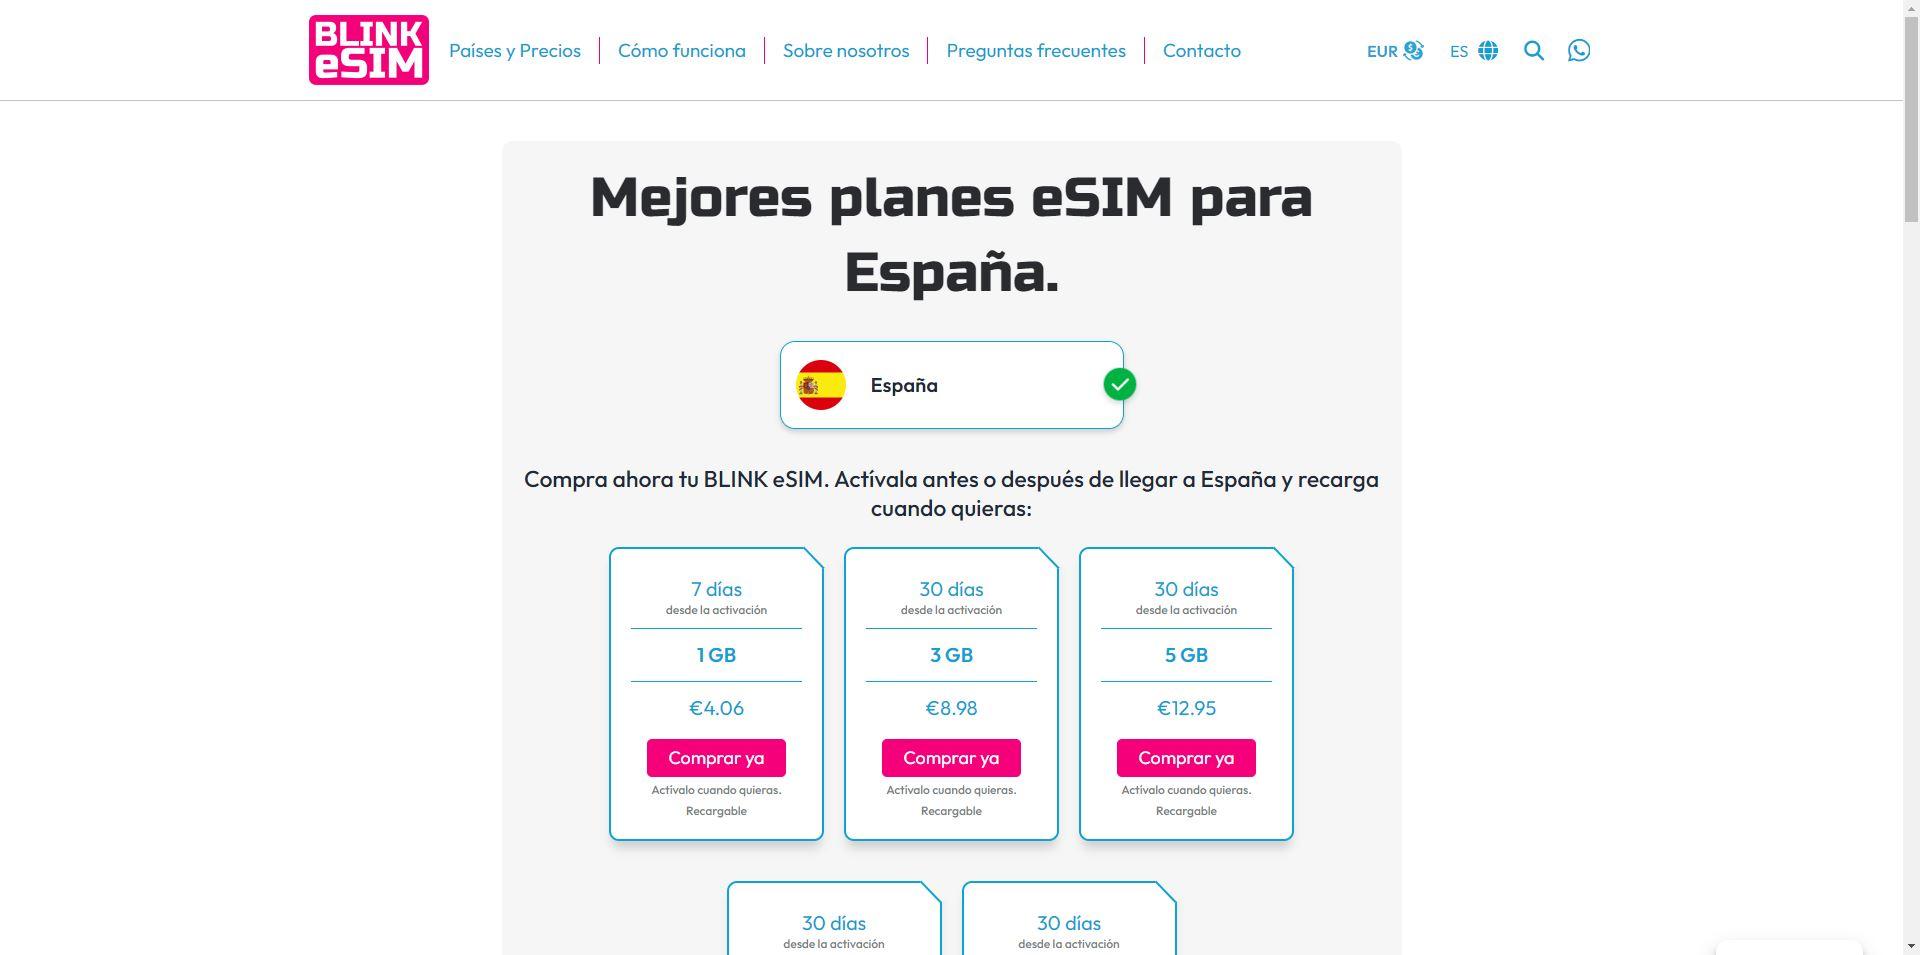 Mejores planes de tarjetas eSIM para España, tarifa de precios